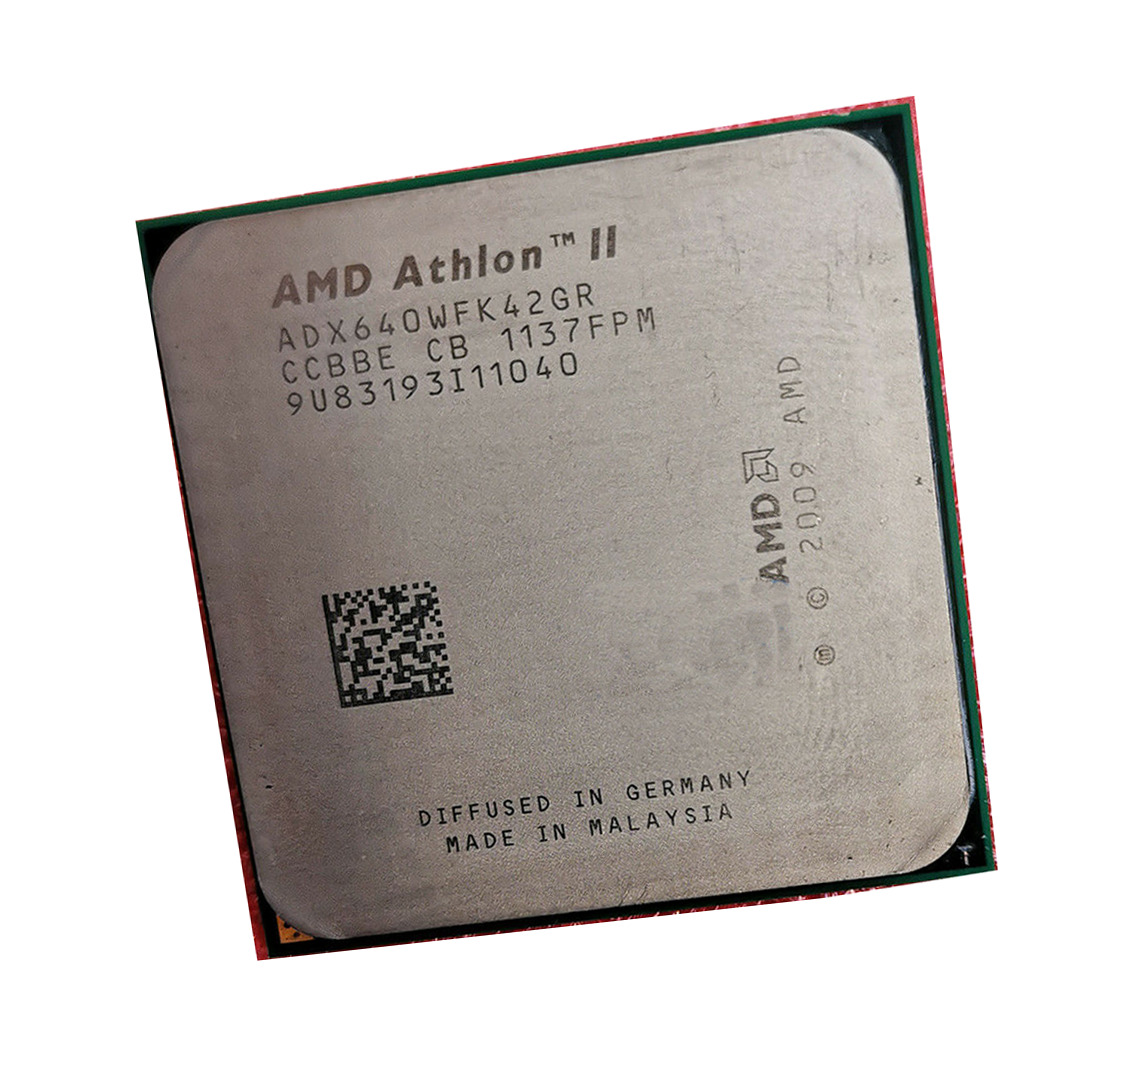 AMD Athlon II X4 640 ADX640WFK42GR 3GHz 4-core Socket AM3 95W CPU Processor